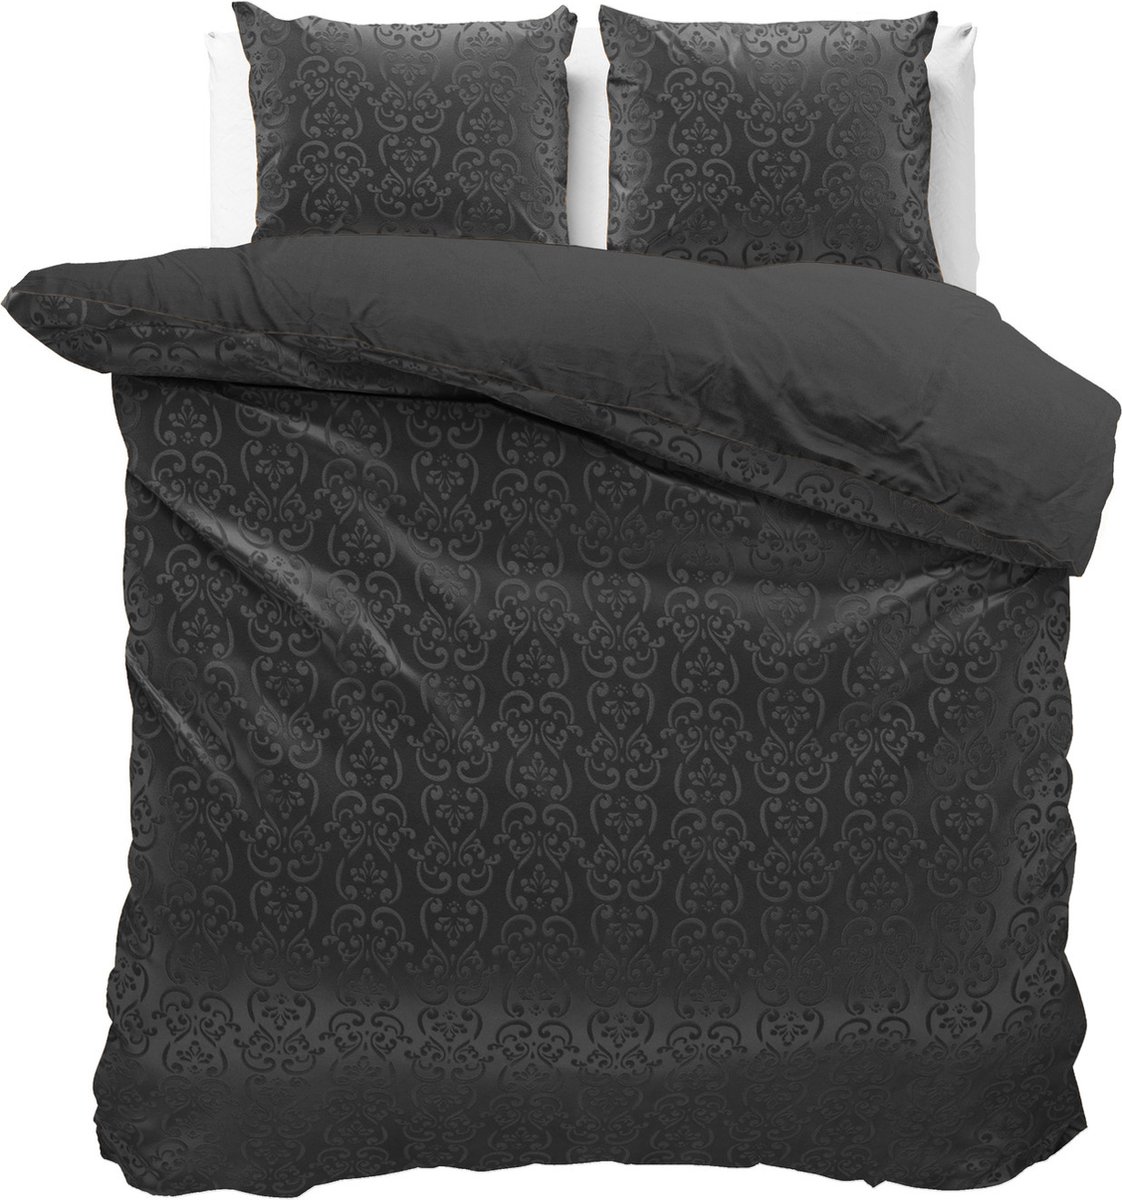 Fluweel zachte velvet dekbedovertrek embossed zwart - tweepersoons (200x200/220) - luxe uitstraling - handige drukknopsluiting